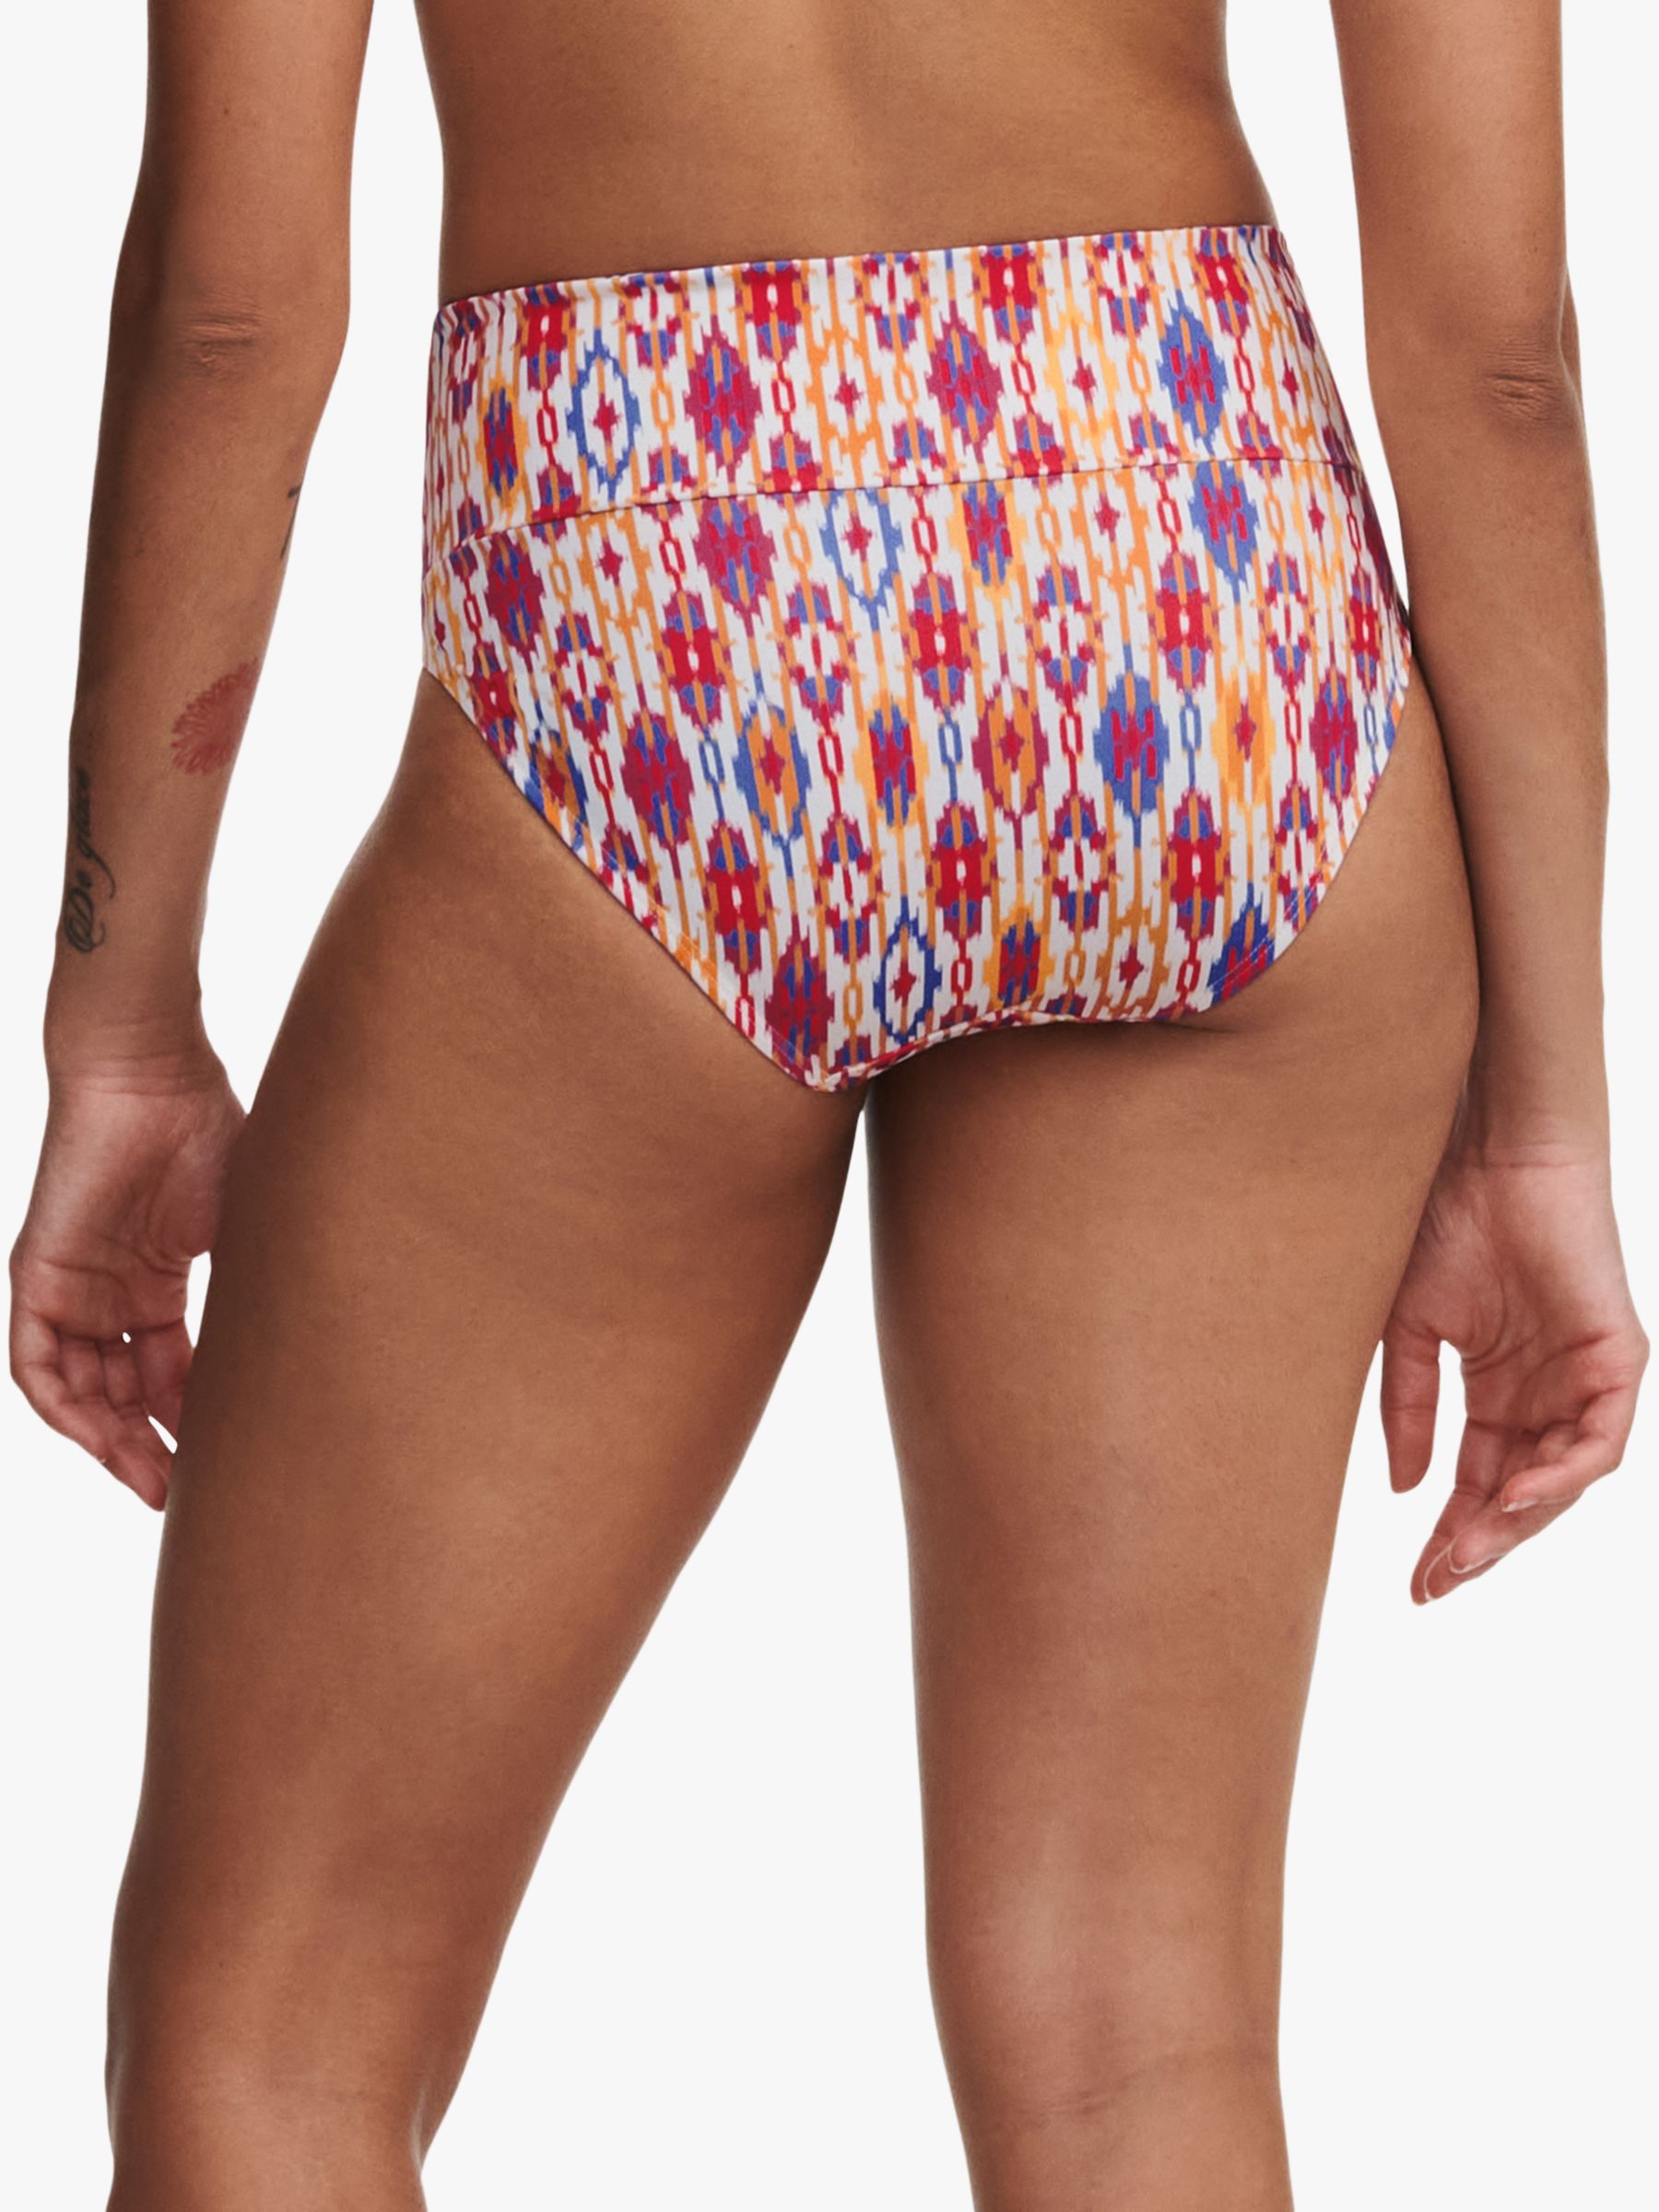 Chantelle Devotion Ikat Print Fold Down Bikini Bottoms, Red/Multi, S